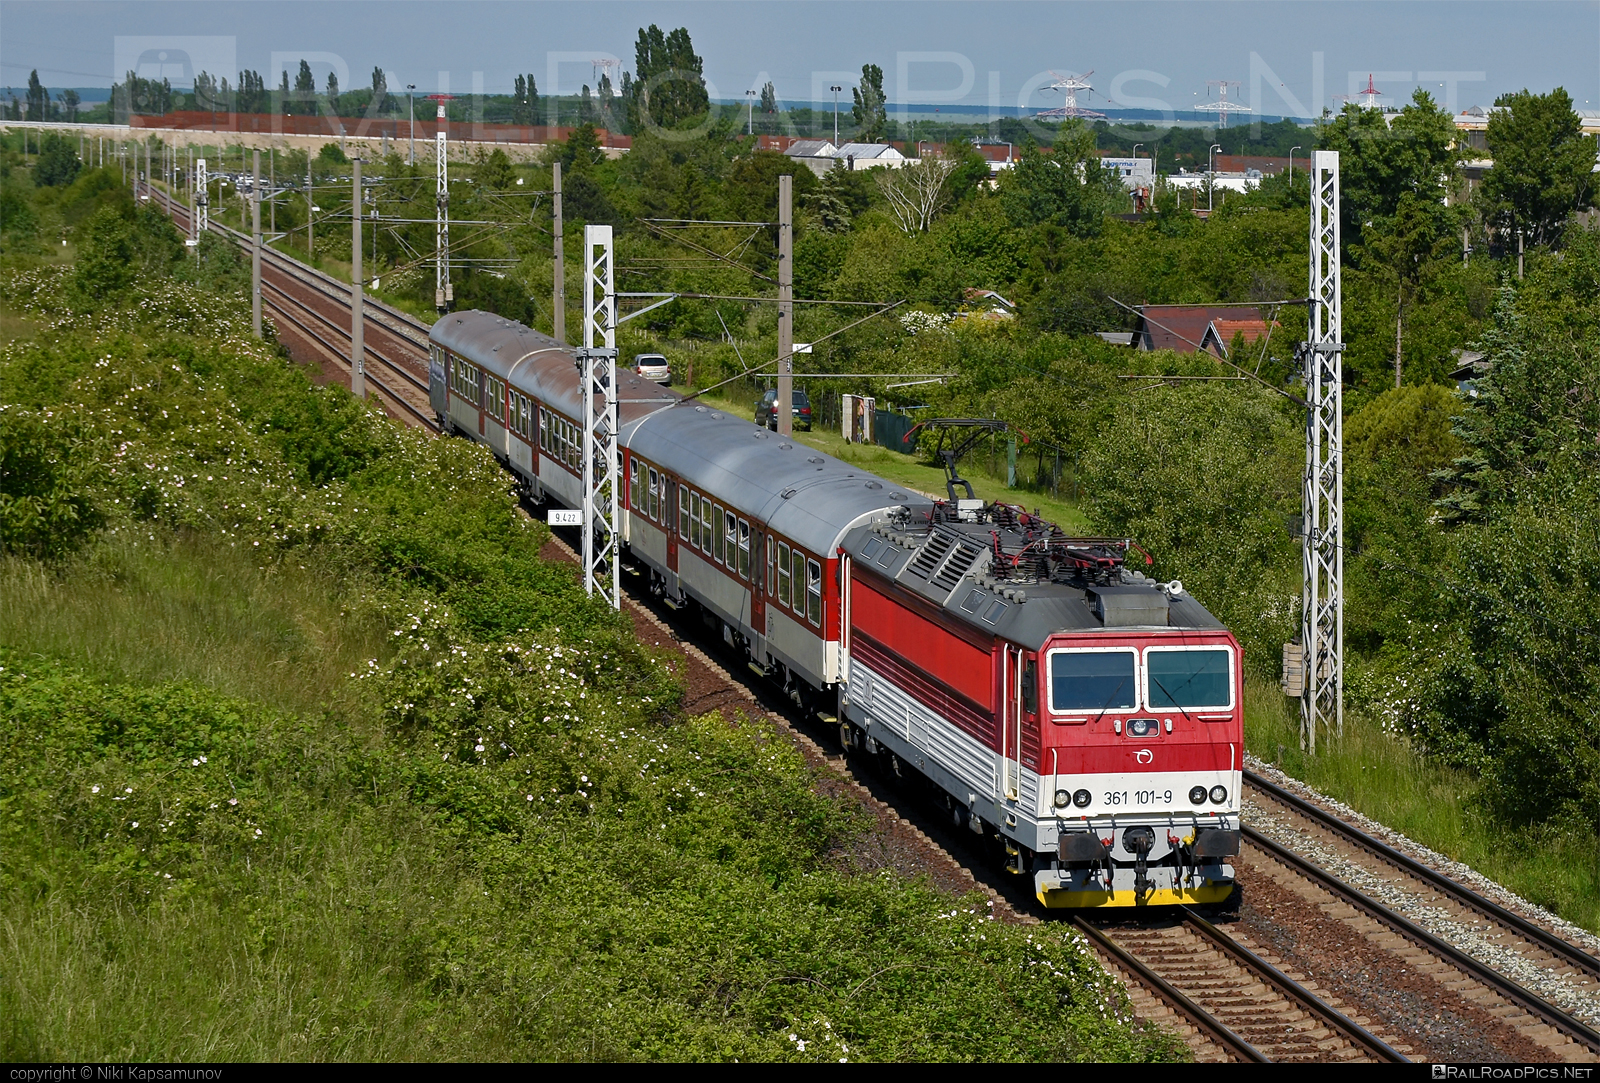 ŽOS Vrútky Class 361.1 - 361 101-9 operated by Železničná Spoločnost' Slovensko, a.s. #ZeleznicnaSpolocnostSlovensko #locomotive361 #locomotive3611 #zosvrutky #zssk